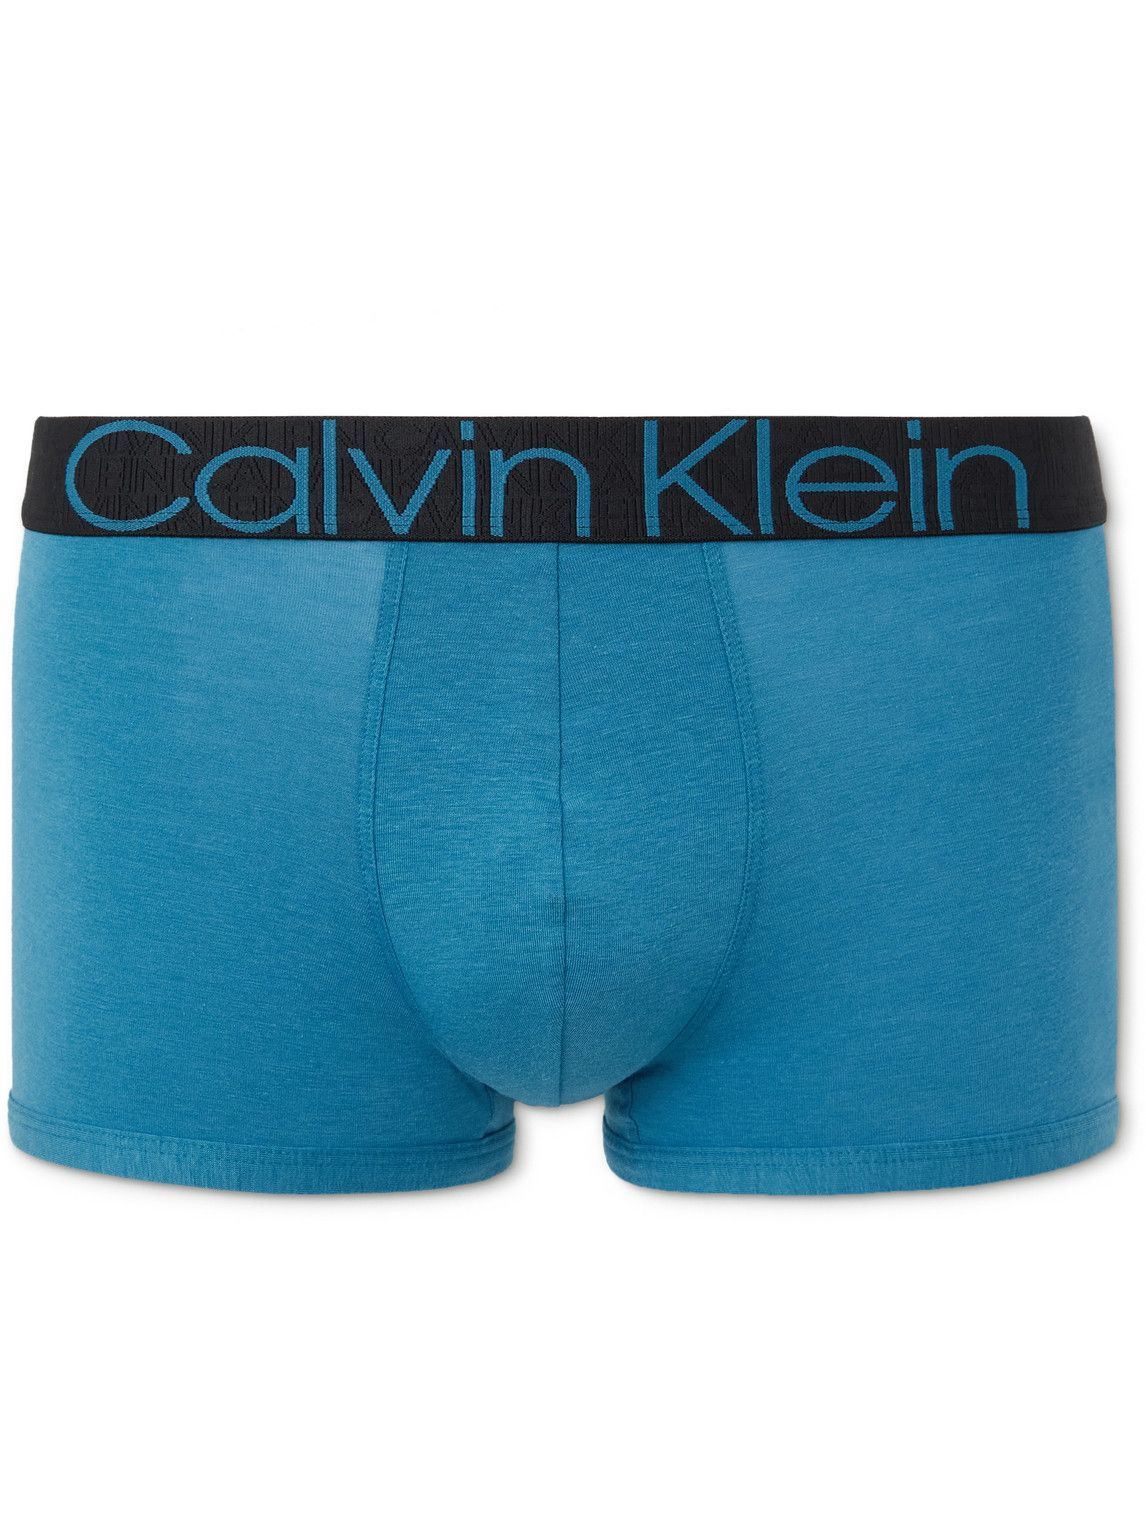 Calvin Klein Underwear - CK RECONSIDERED Refibra-Jersey Boxer Briefs ...